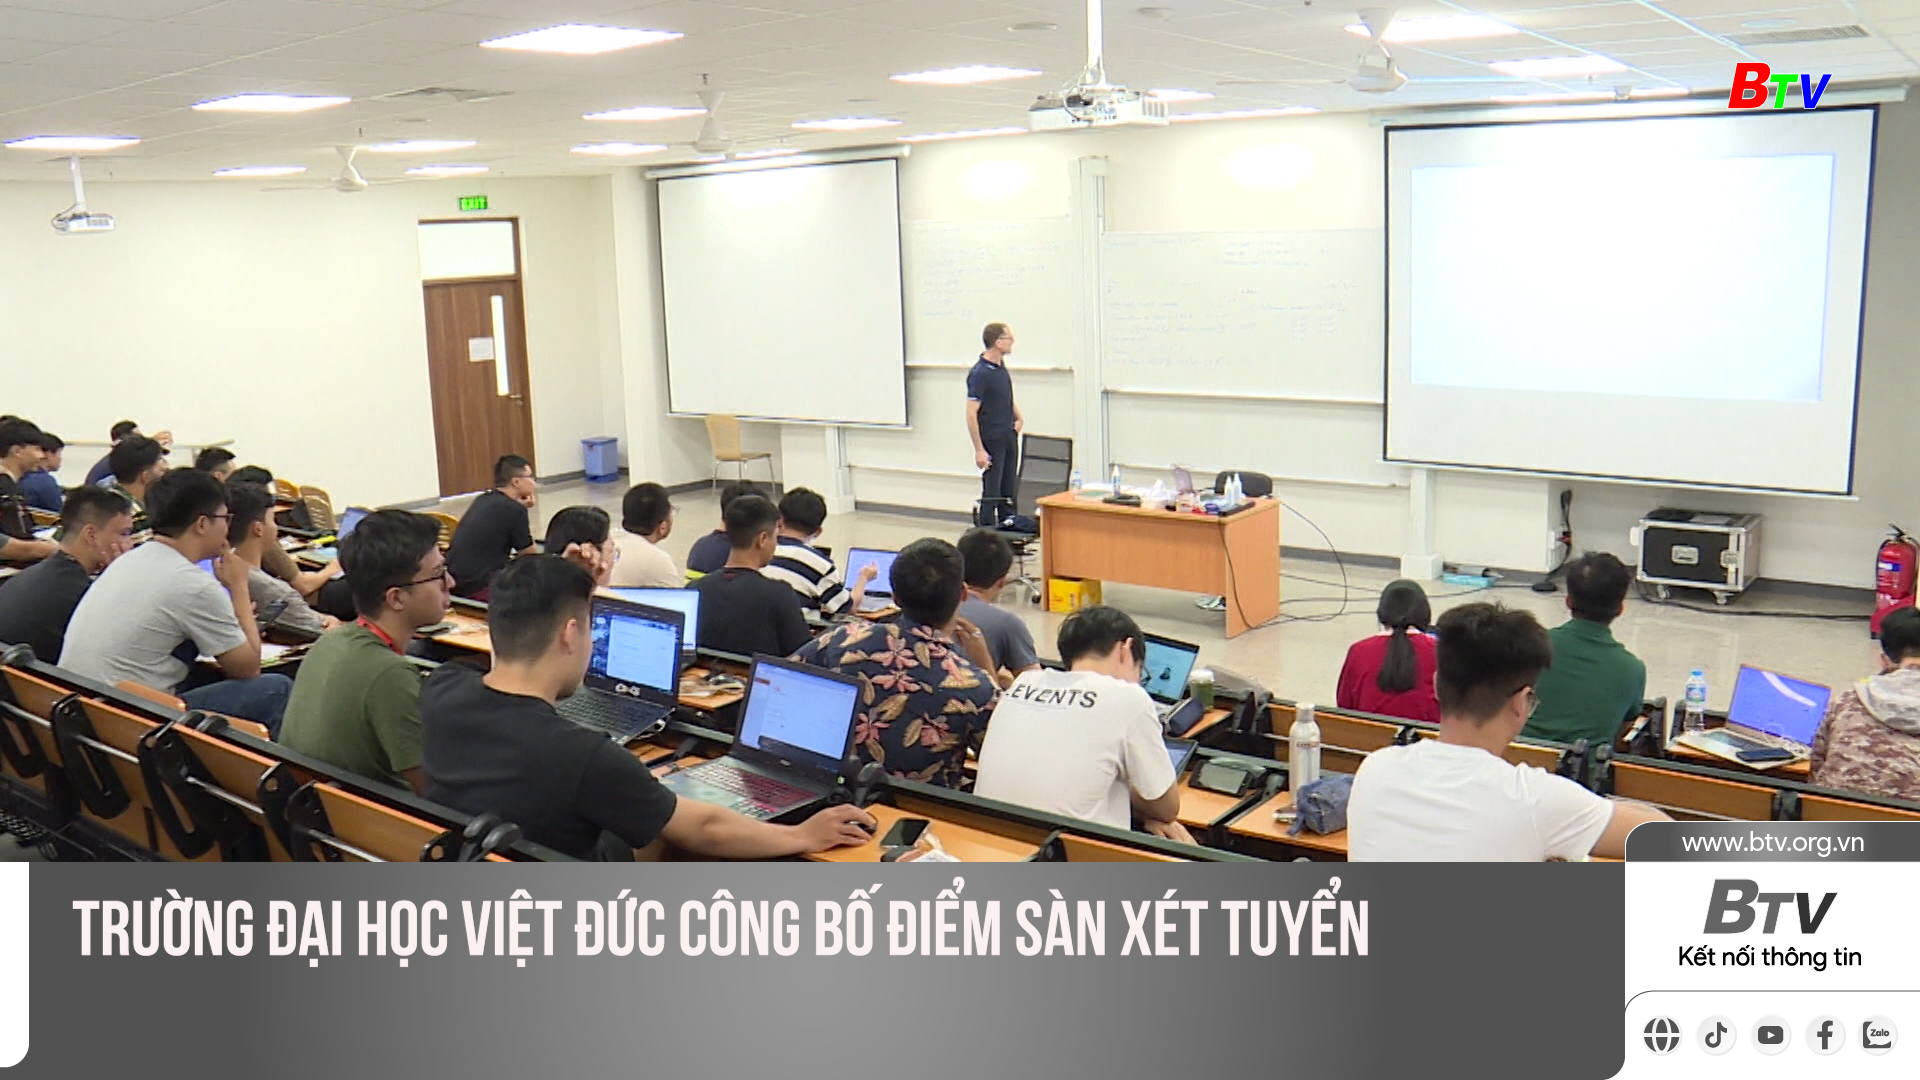 Trường Đại học Việt Đức công bố điểm sàn xét tuyển